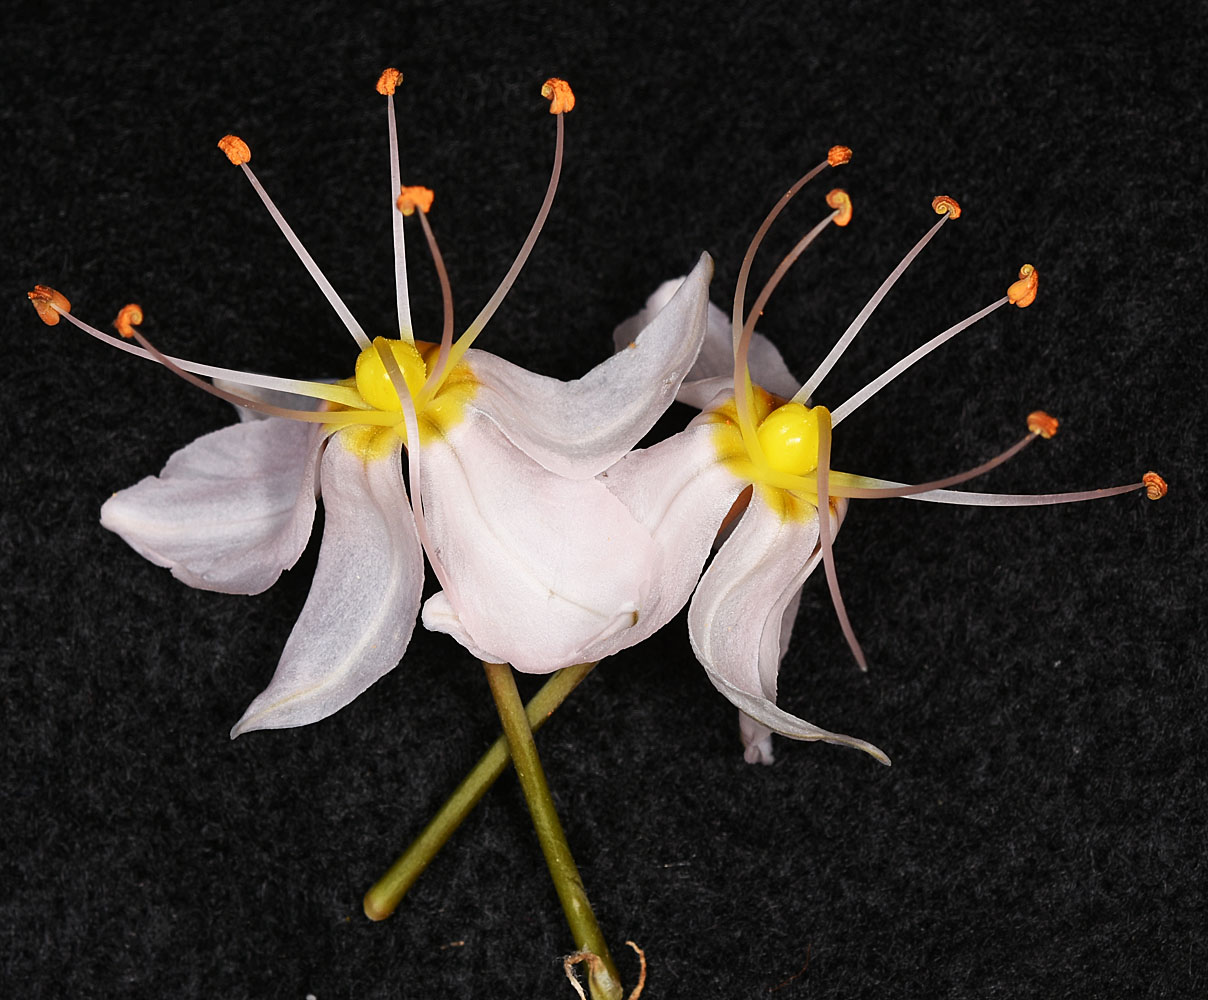 Flora of Eastern Washington Image: Asphodelus macrocarpus